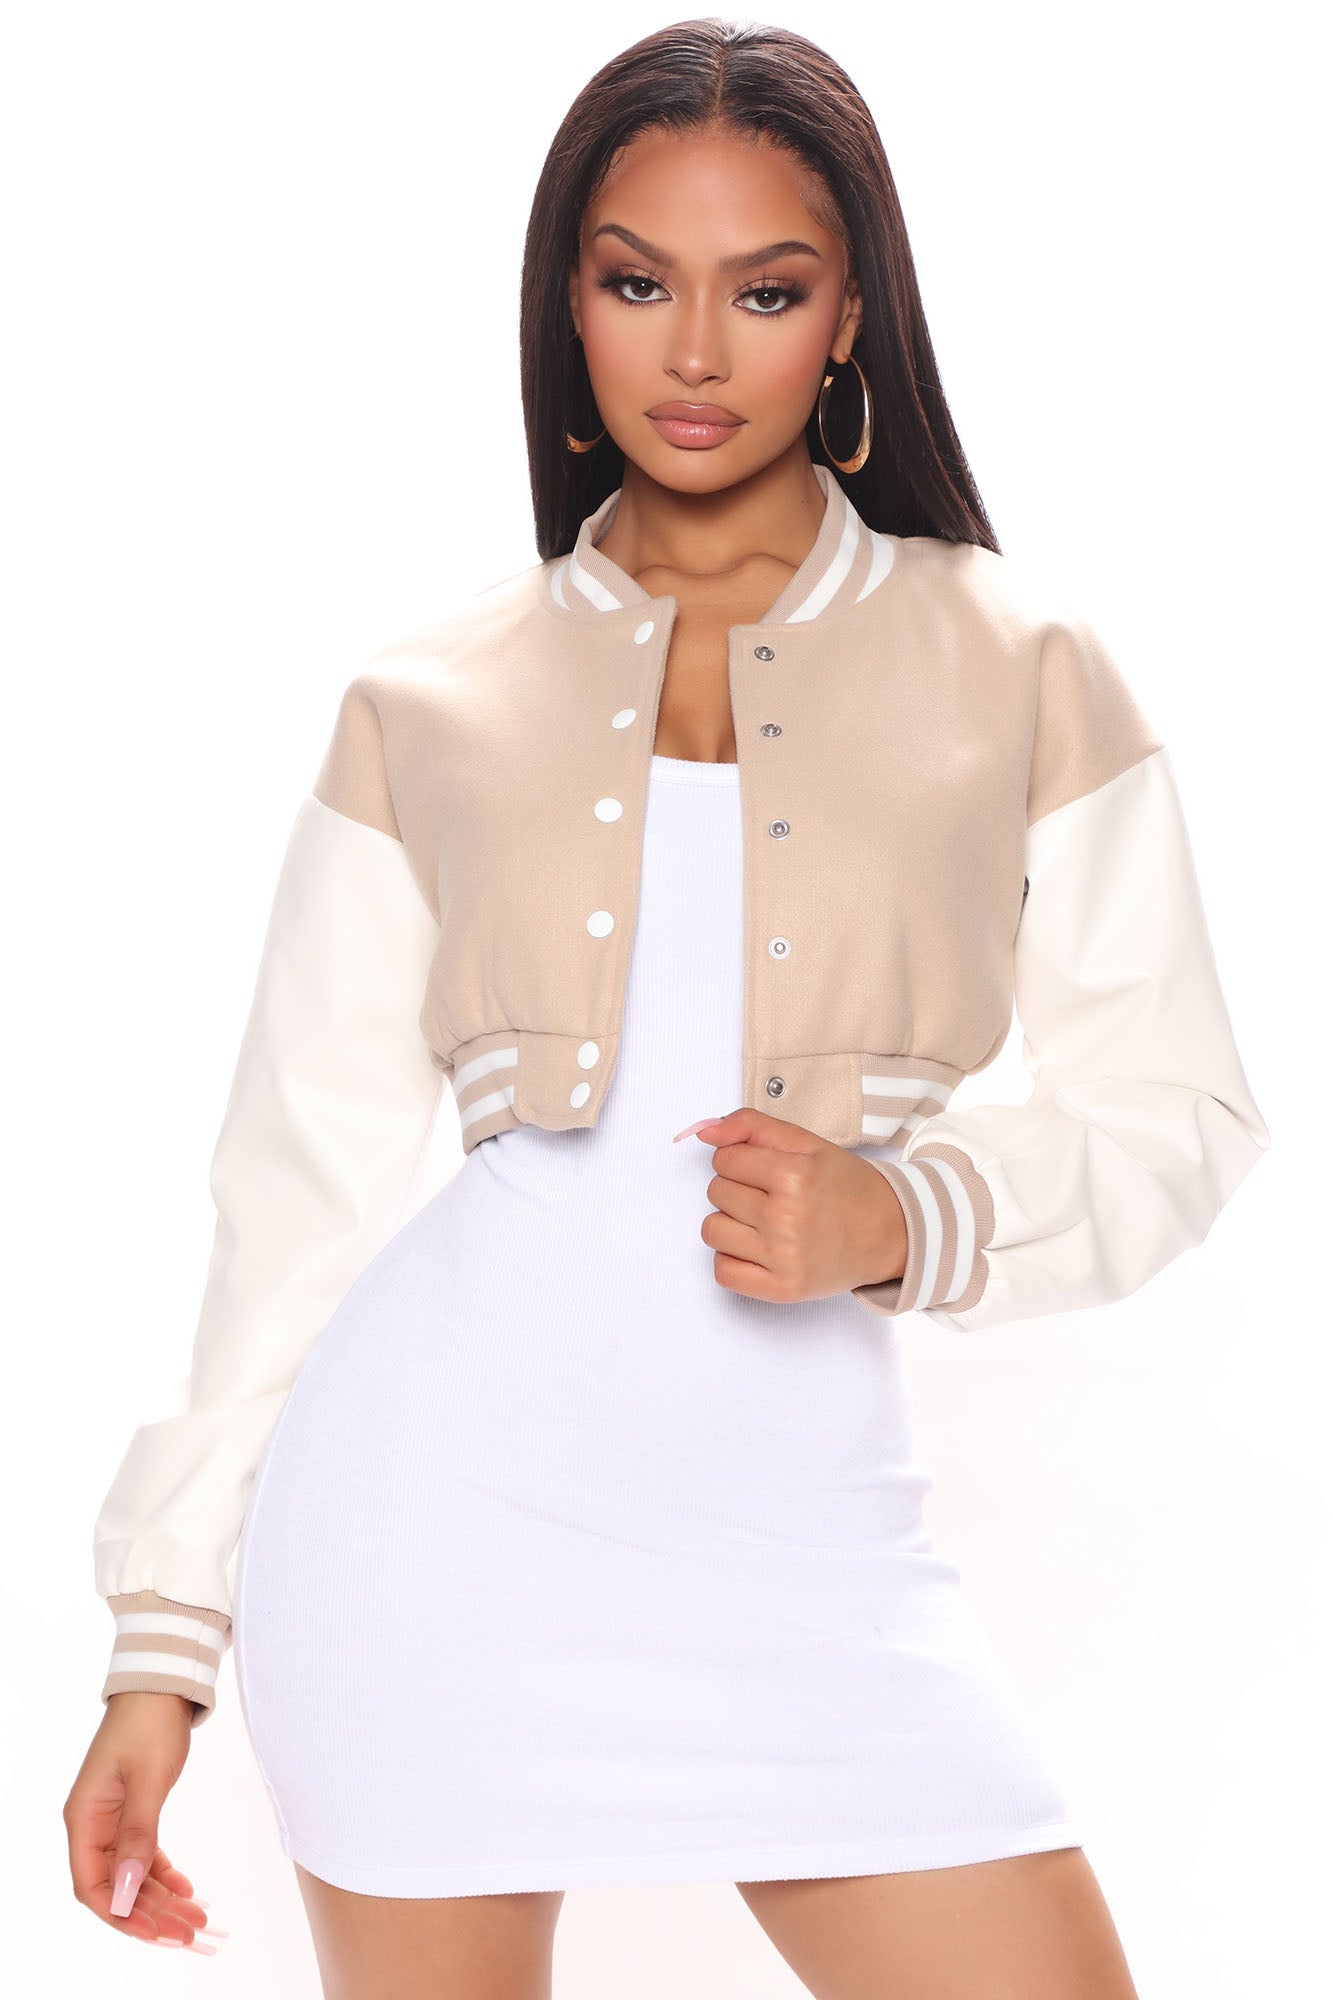 텺NANCY Bolen for City Girl Jacket Khaki Tan  Girls jacket, Jean jacket  styles, Clothes design